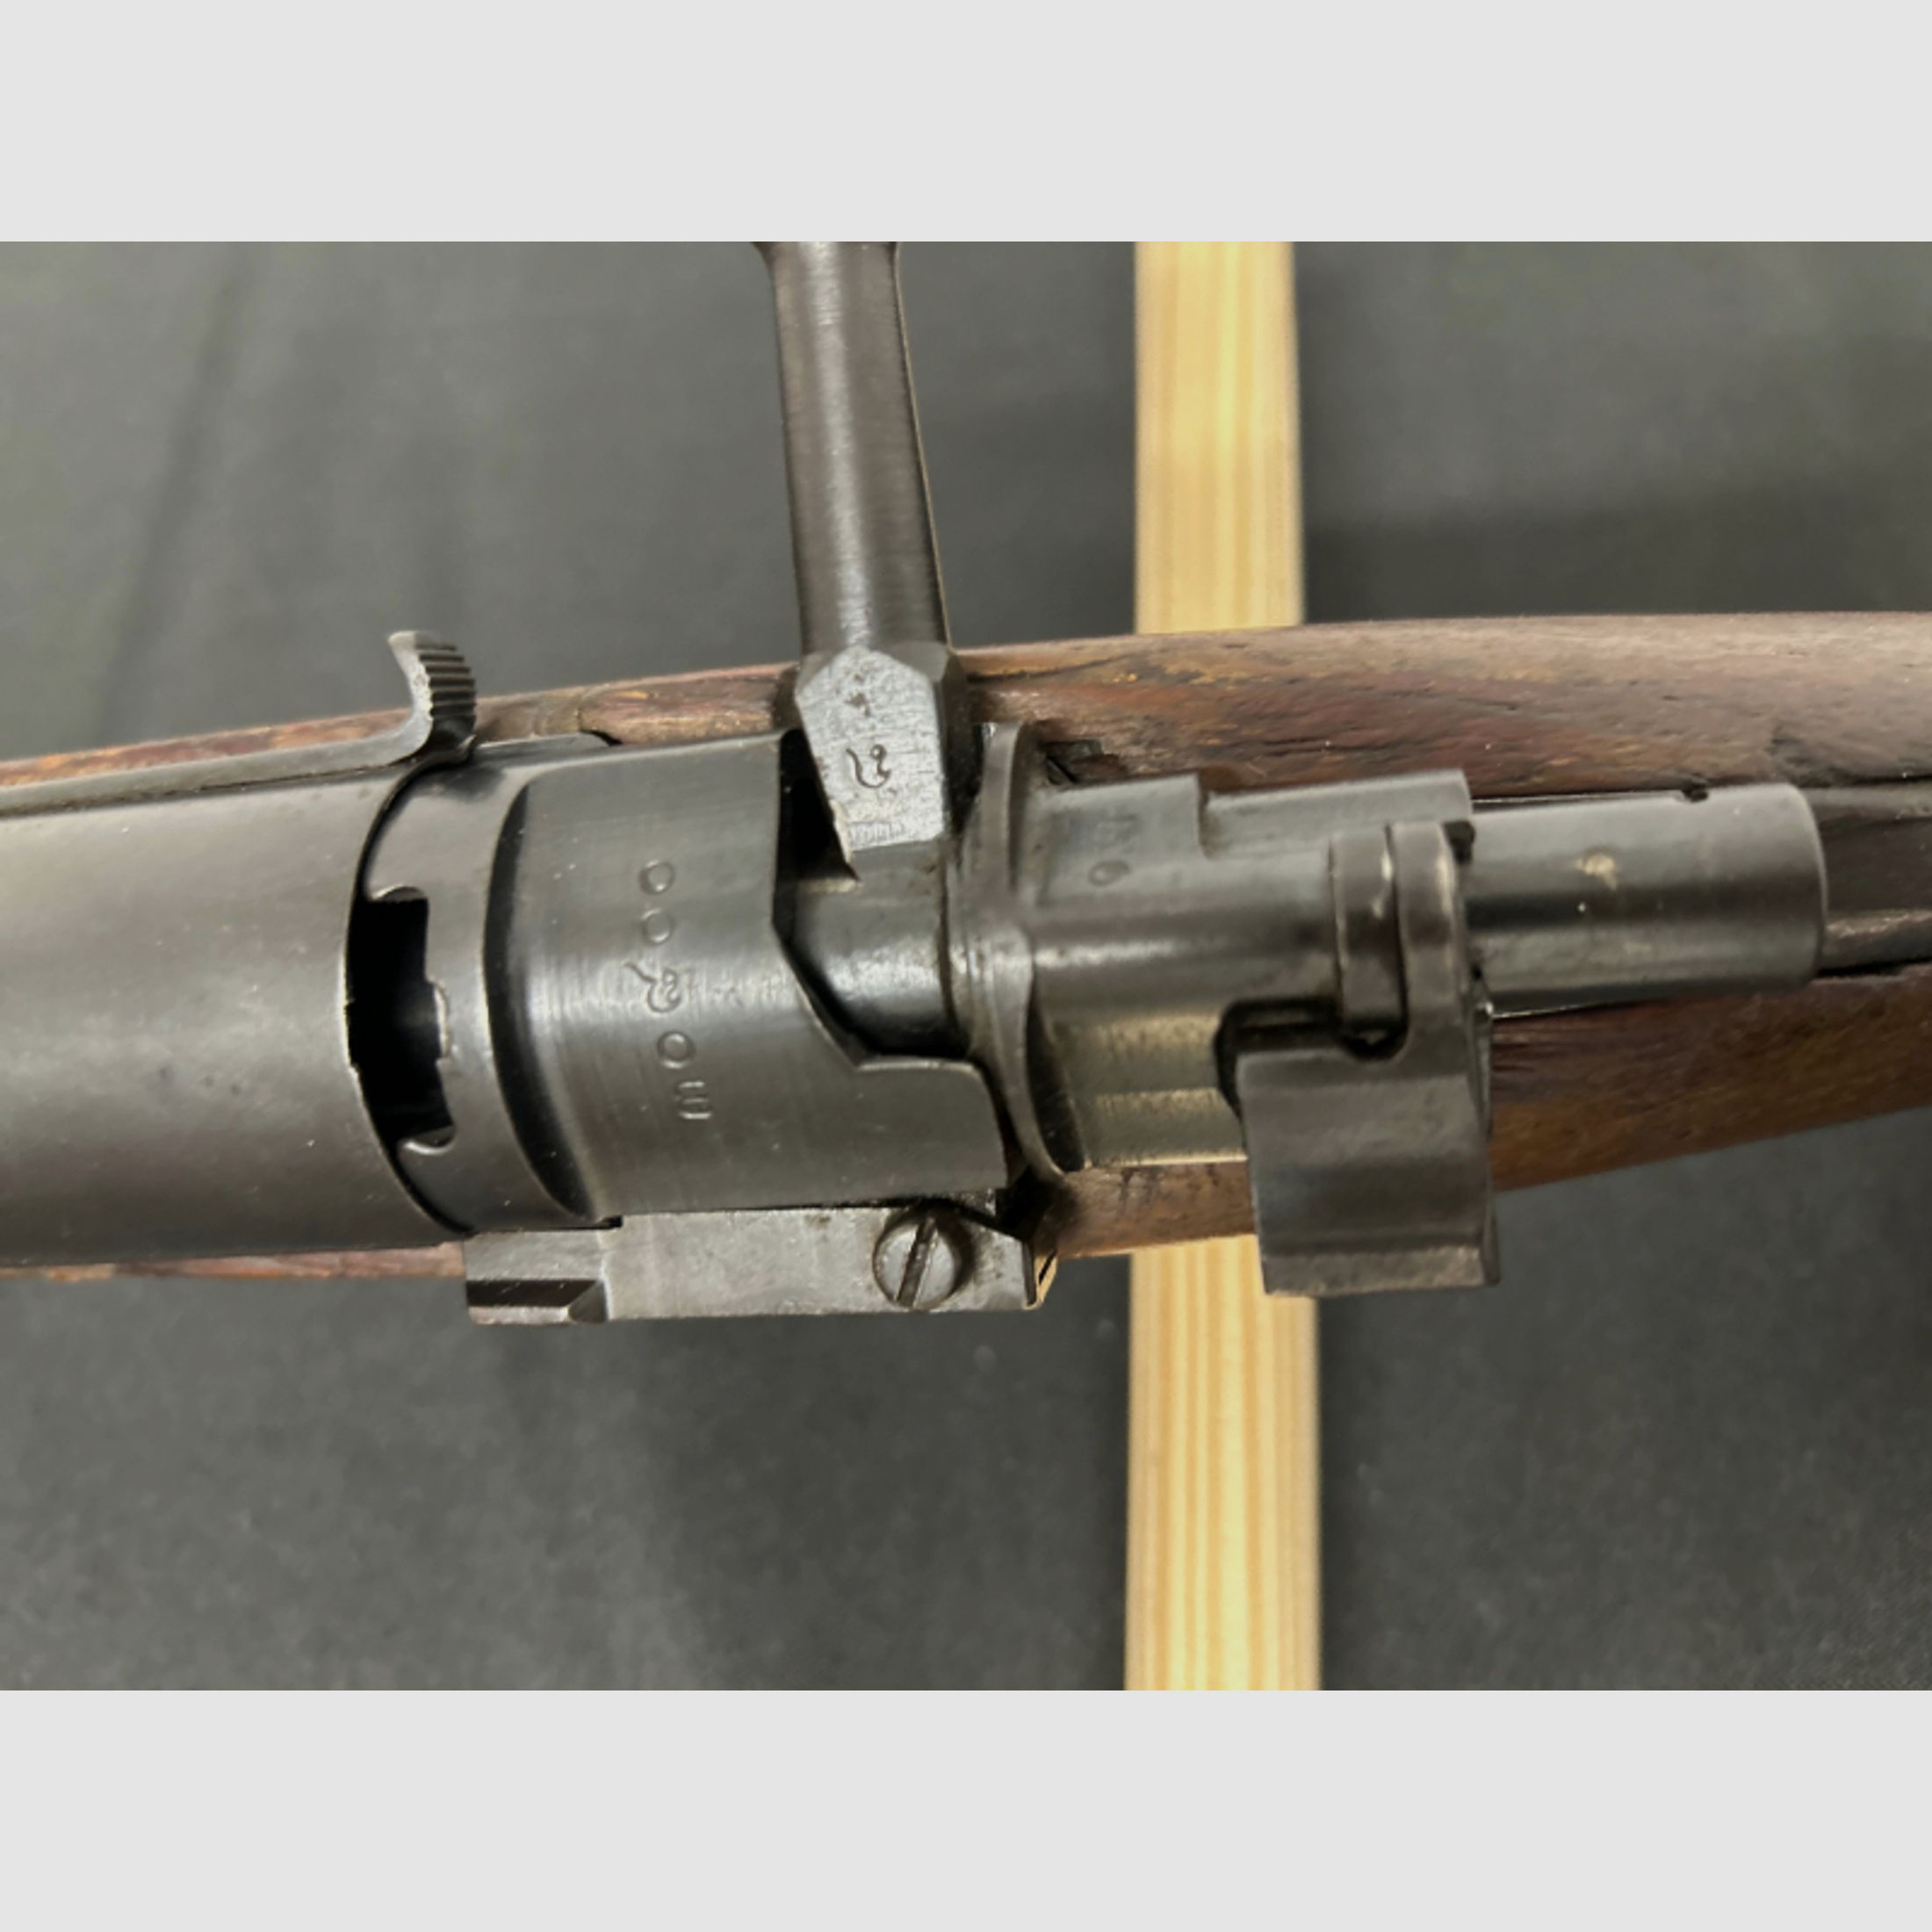 Repetierbüchse Siam Mauser 8x52R Siam Königreich Siam